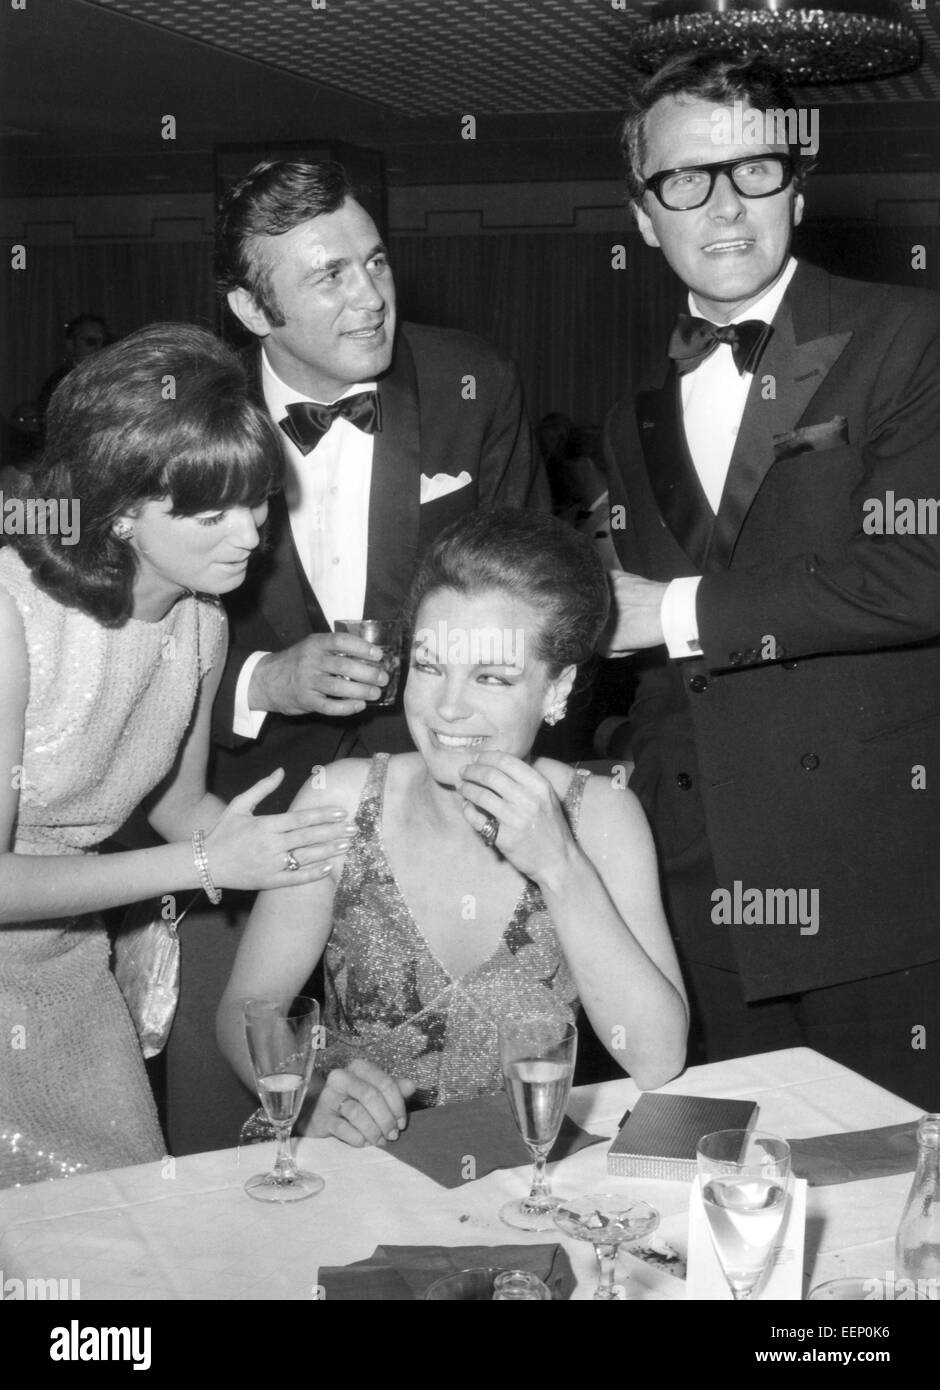 Actrice Romy Schneider (M) et son mari Harry Meyen (r) parle d'ancien boxeur Bubi Scholz et son épouse Helga pendant le Festival International du Film sur la journée du 27 juin en 1968. Banque D'Images